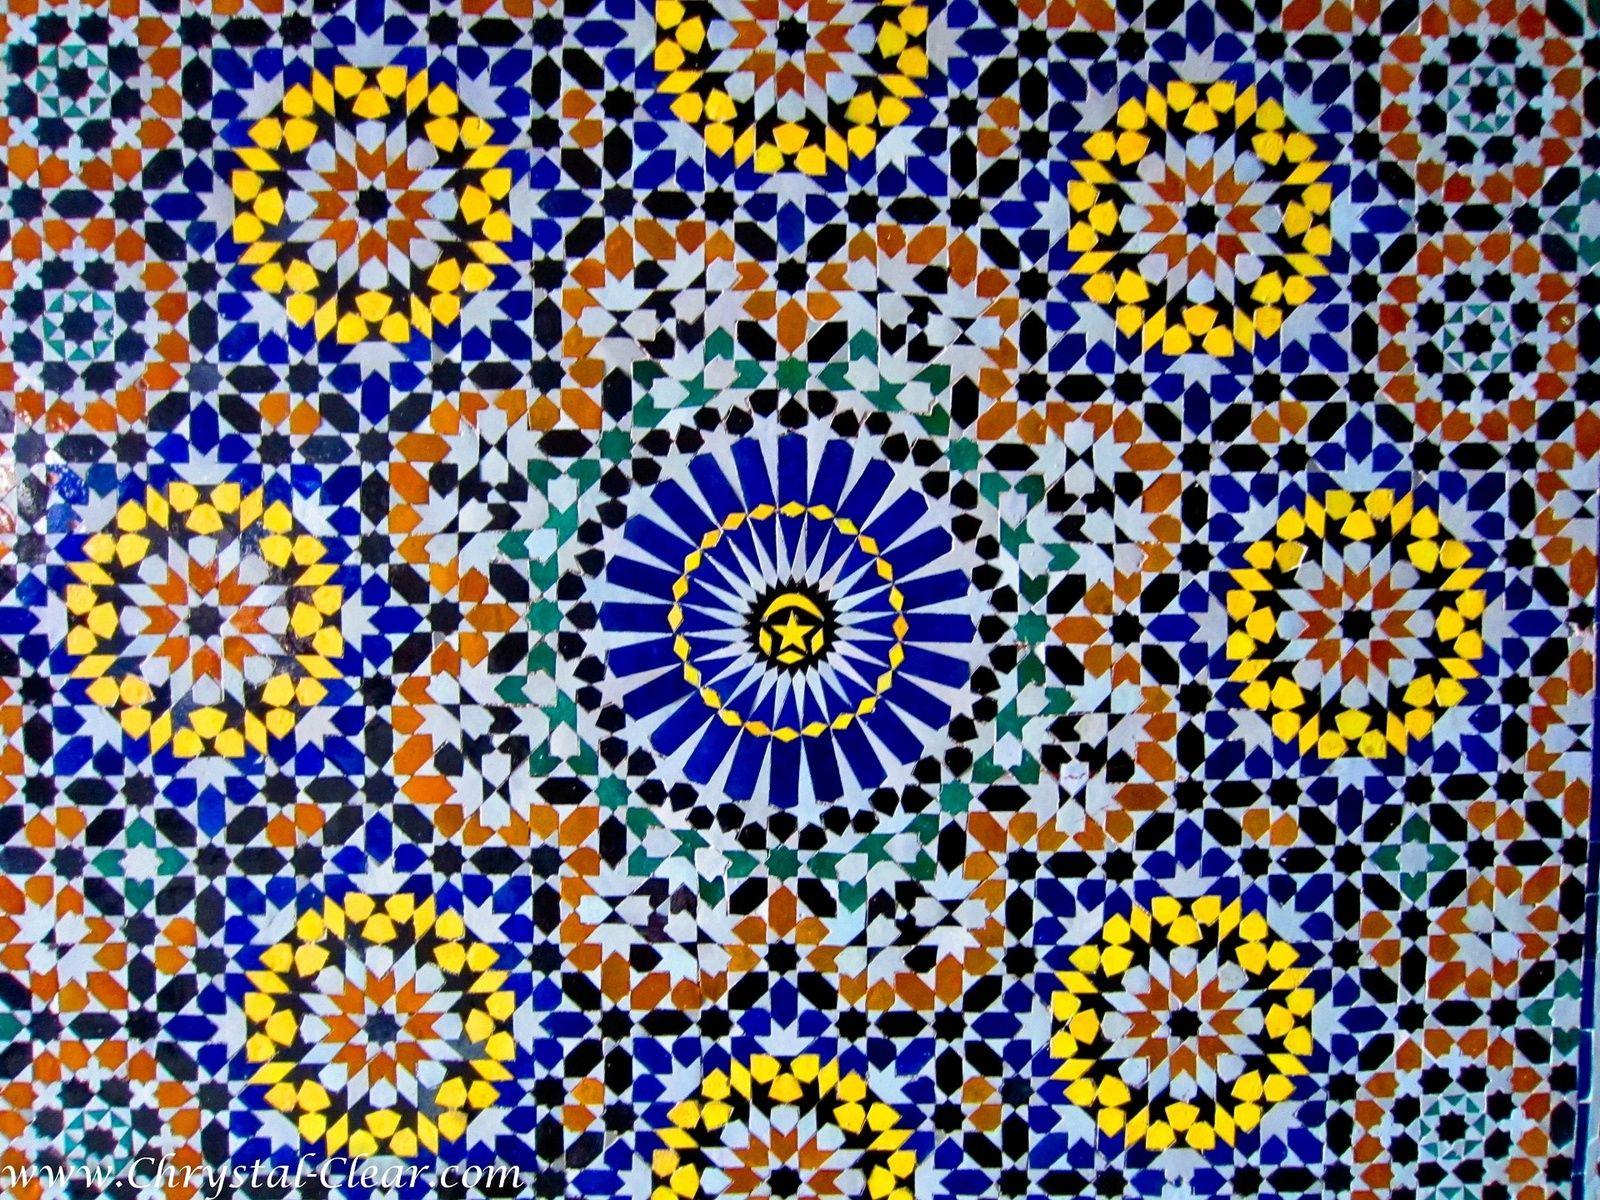 Morocco Wallpaper, HD Creative Morocco Picture, Full HD Wallpaper